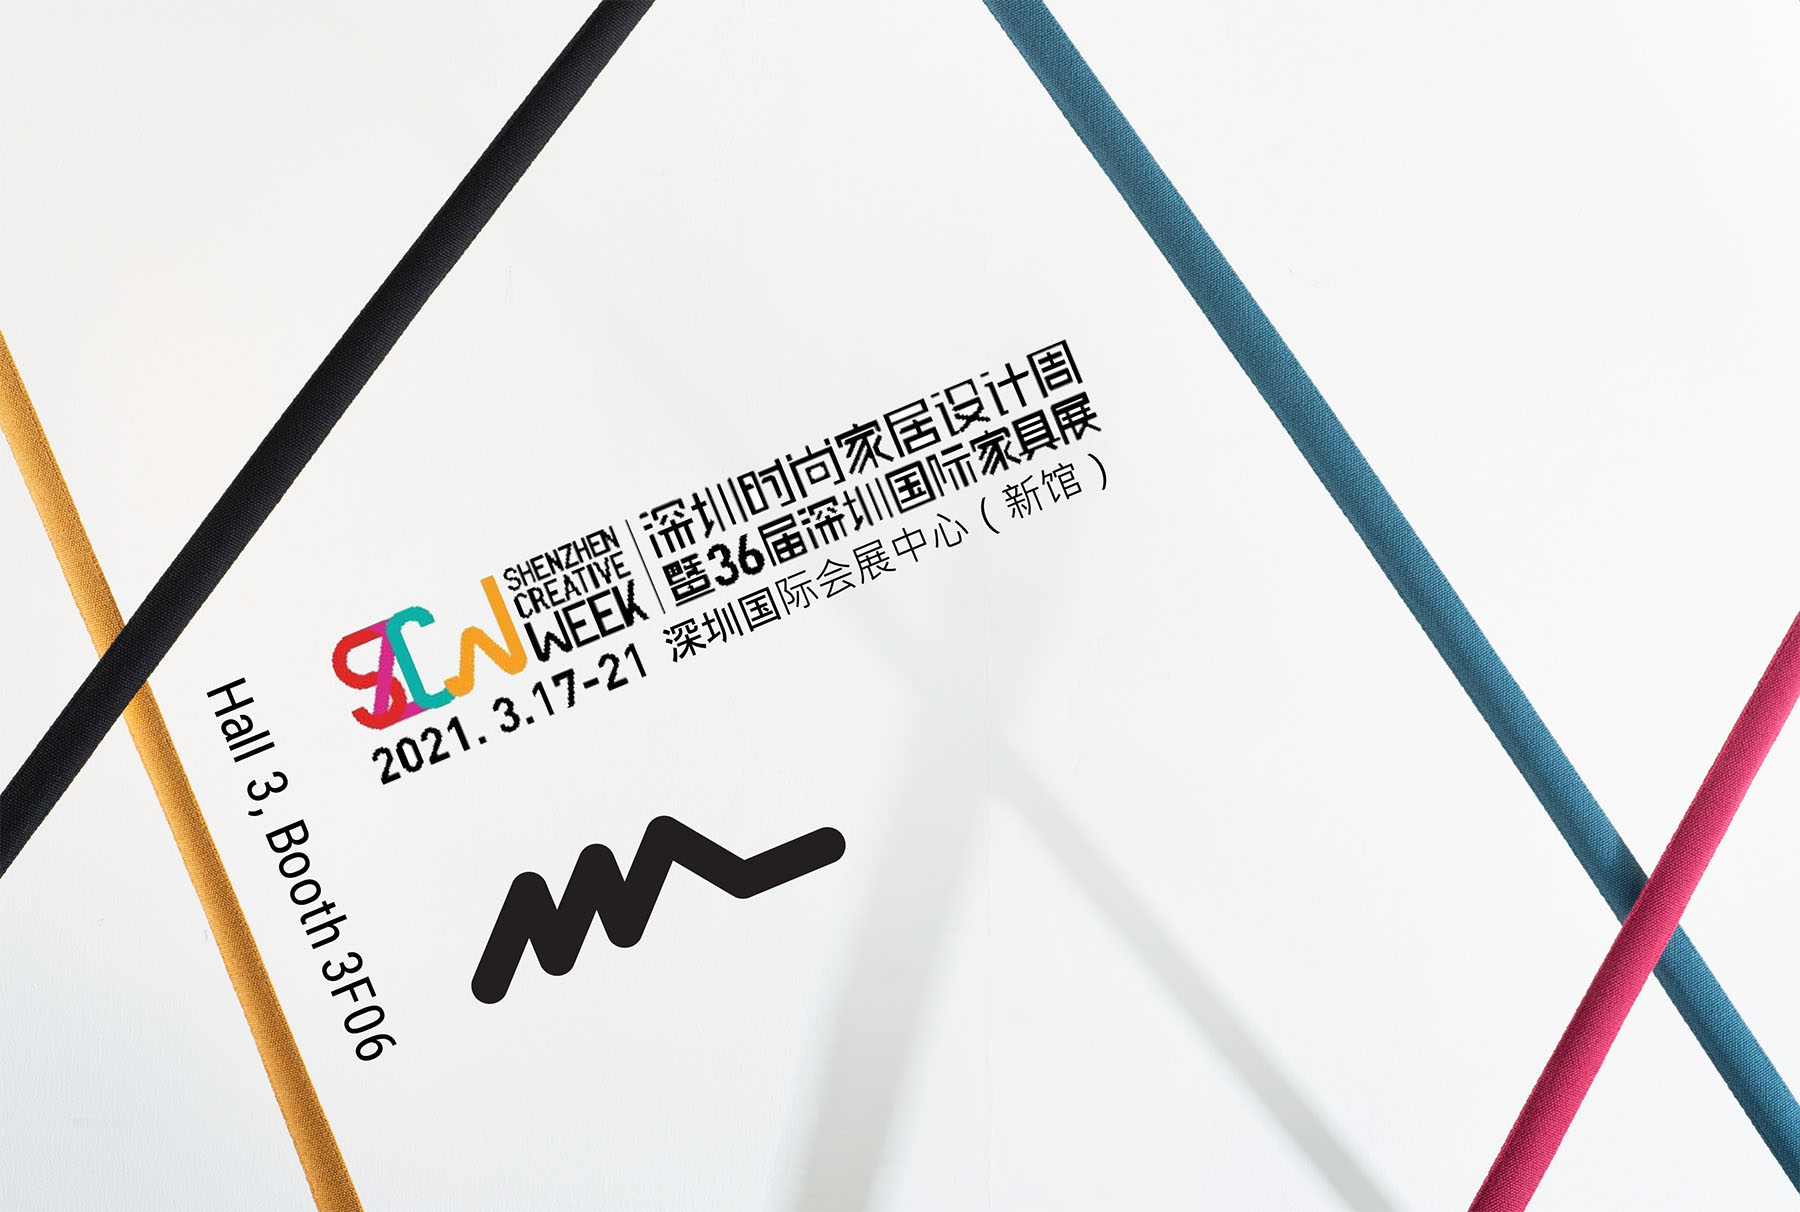 Shenzhen Creative Week 17th - 21st of March 2021